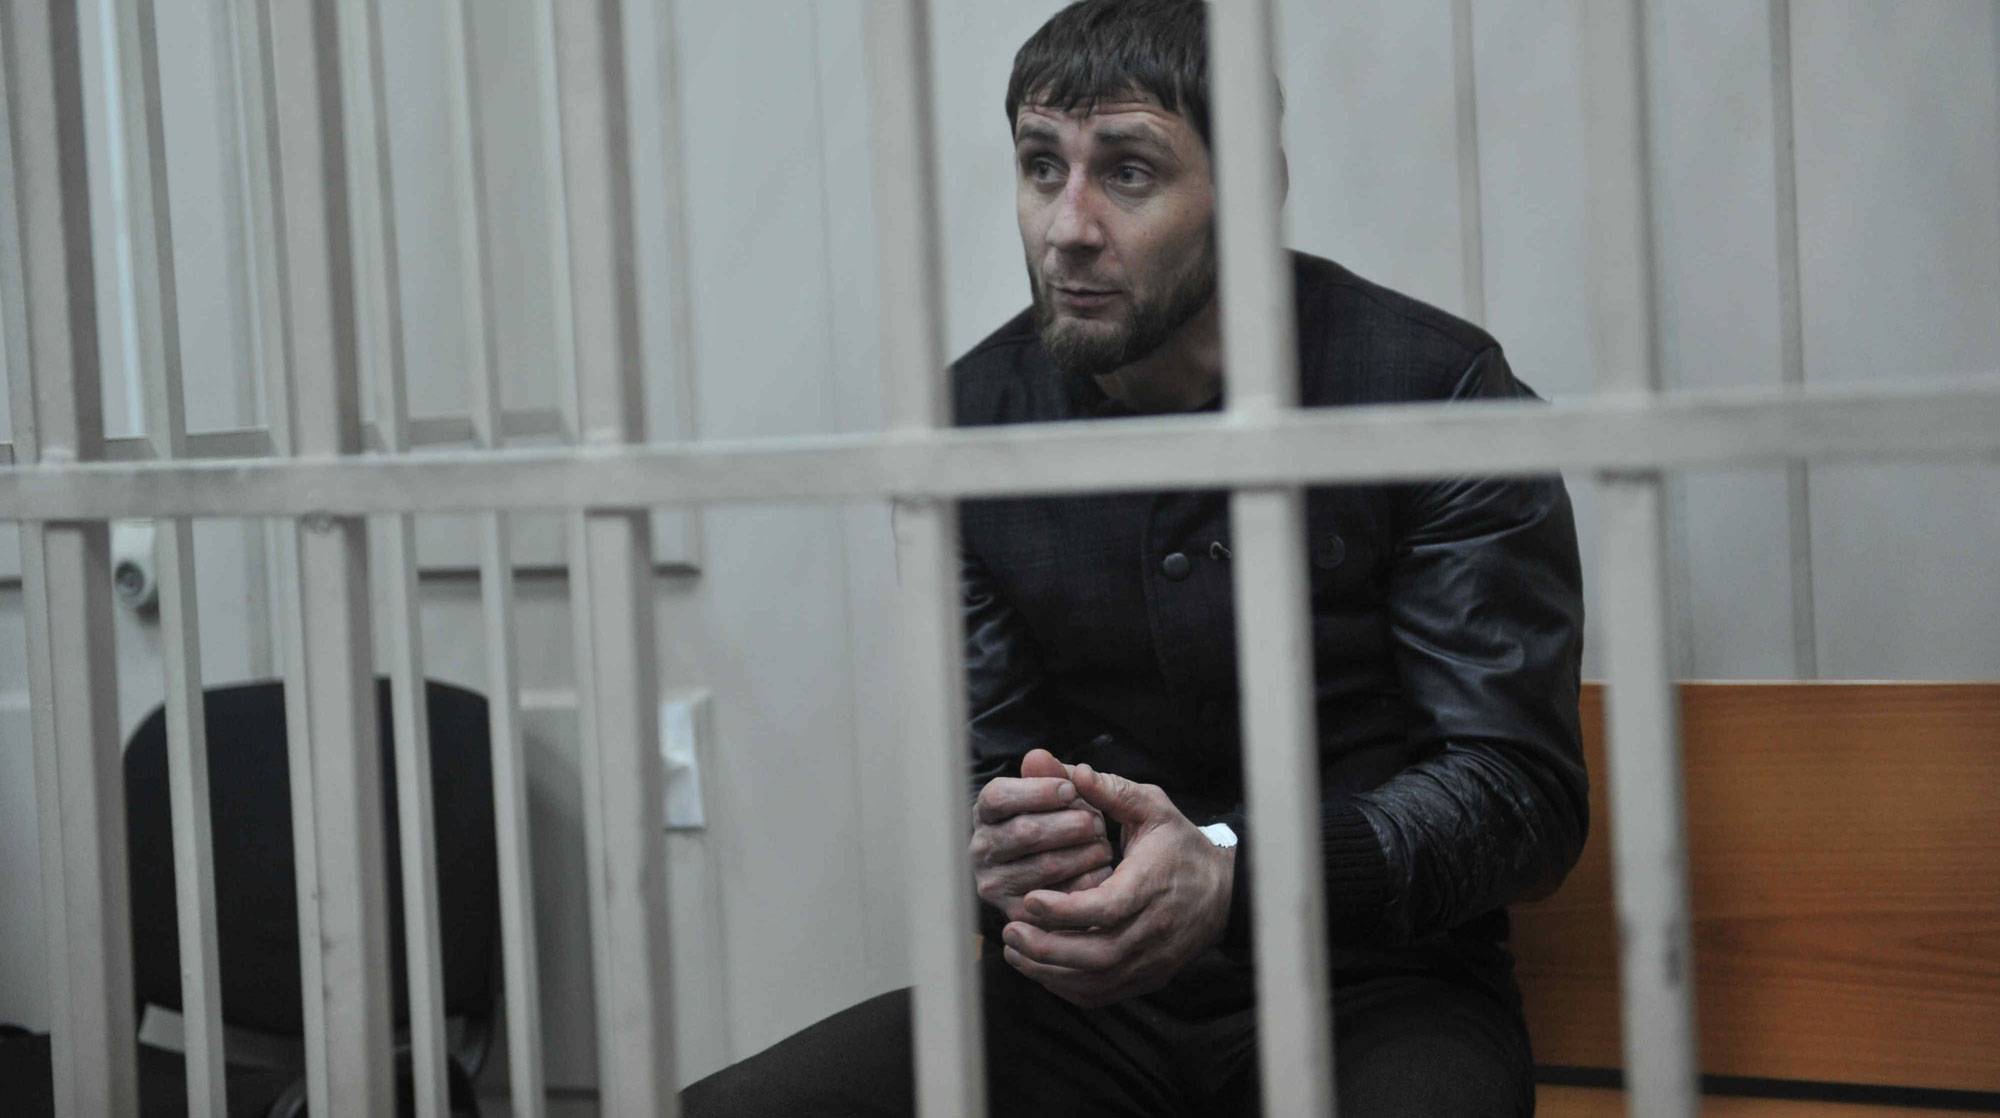 Dailystorm - Все обвиняемые по делу об убийстве Немцова признаны виновными